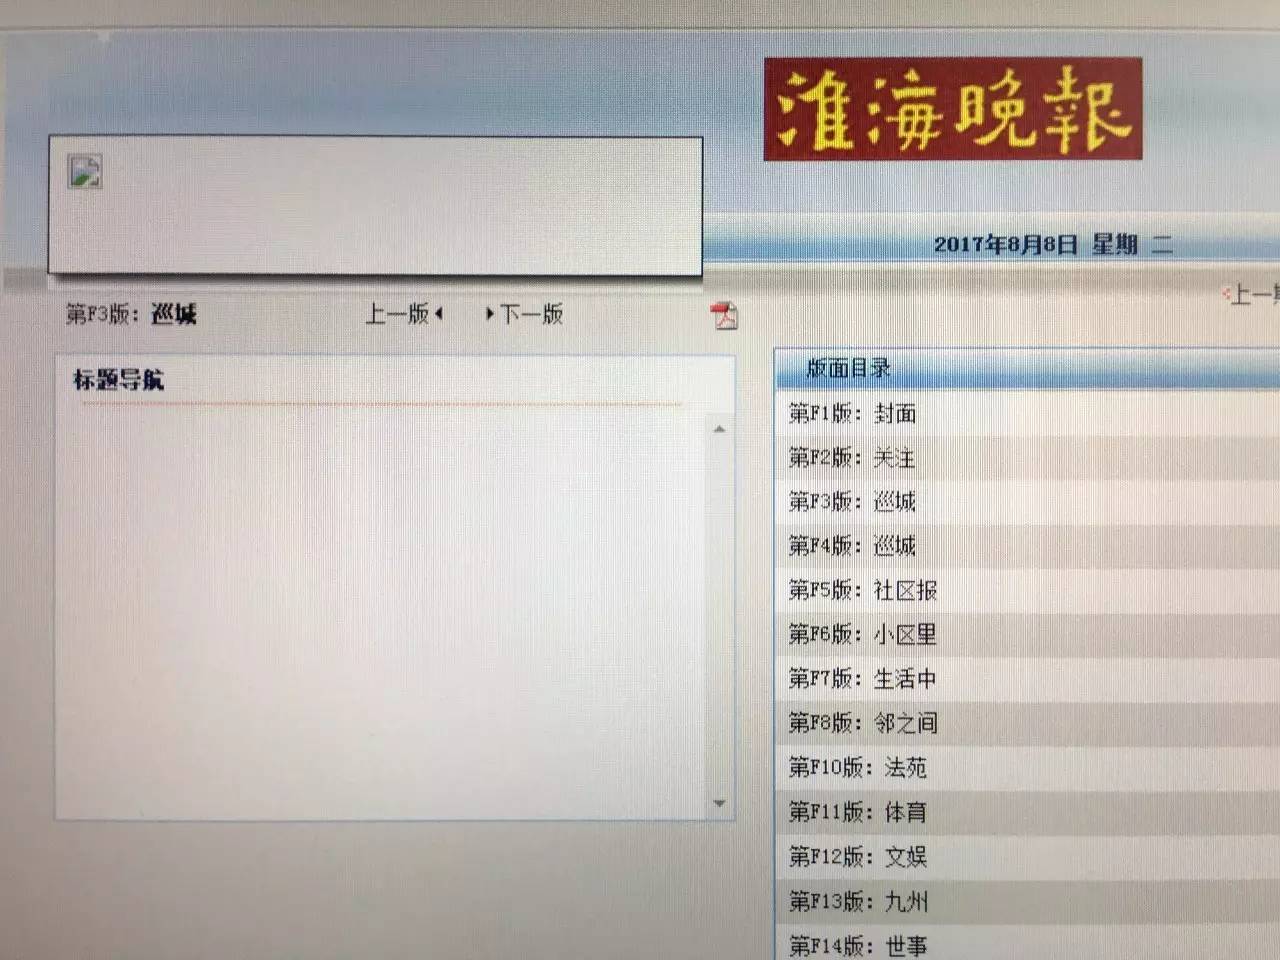 8月8日《淮海晚报》电子版大变身,封三版由"开天窗"变成"公益广告"!